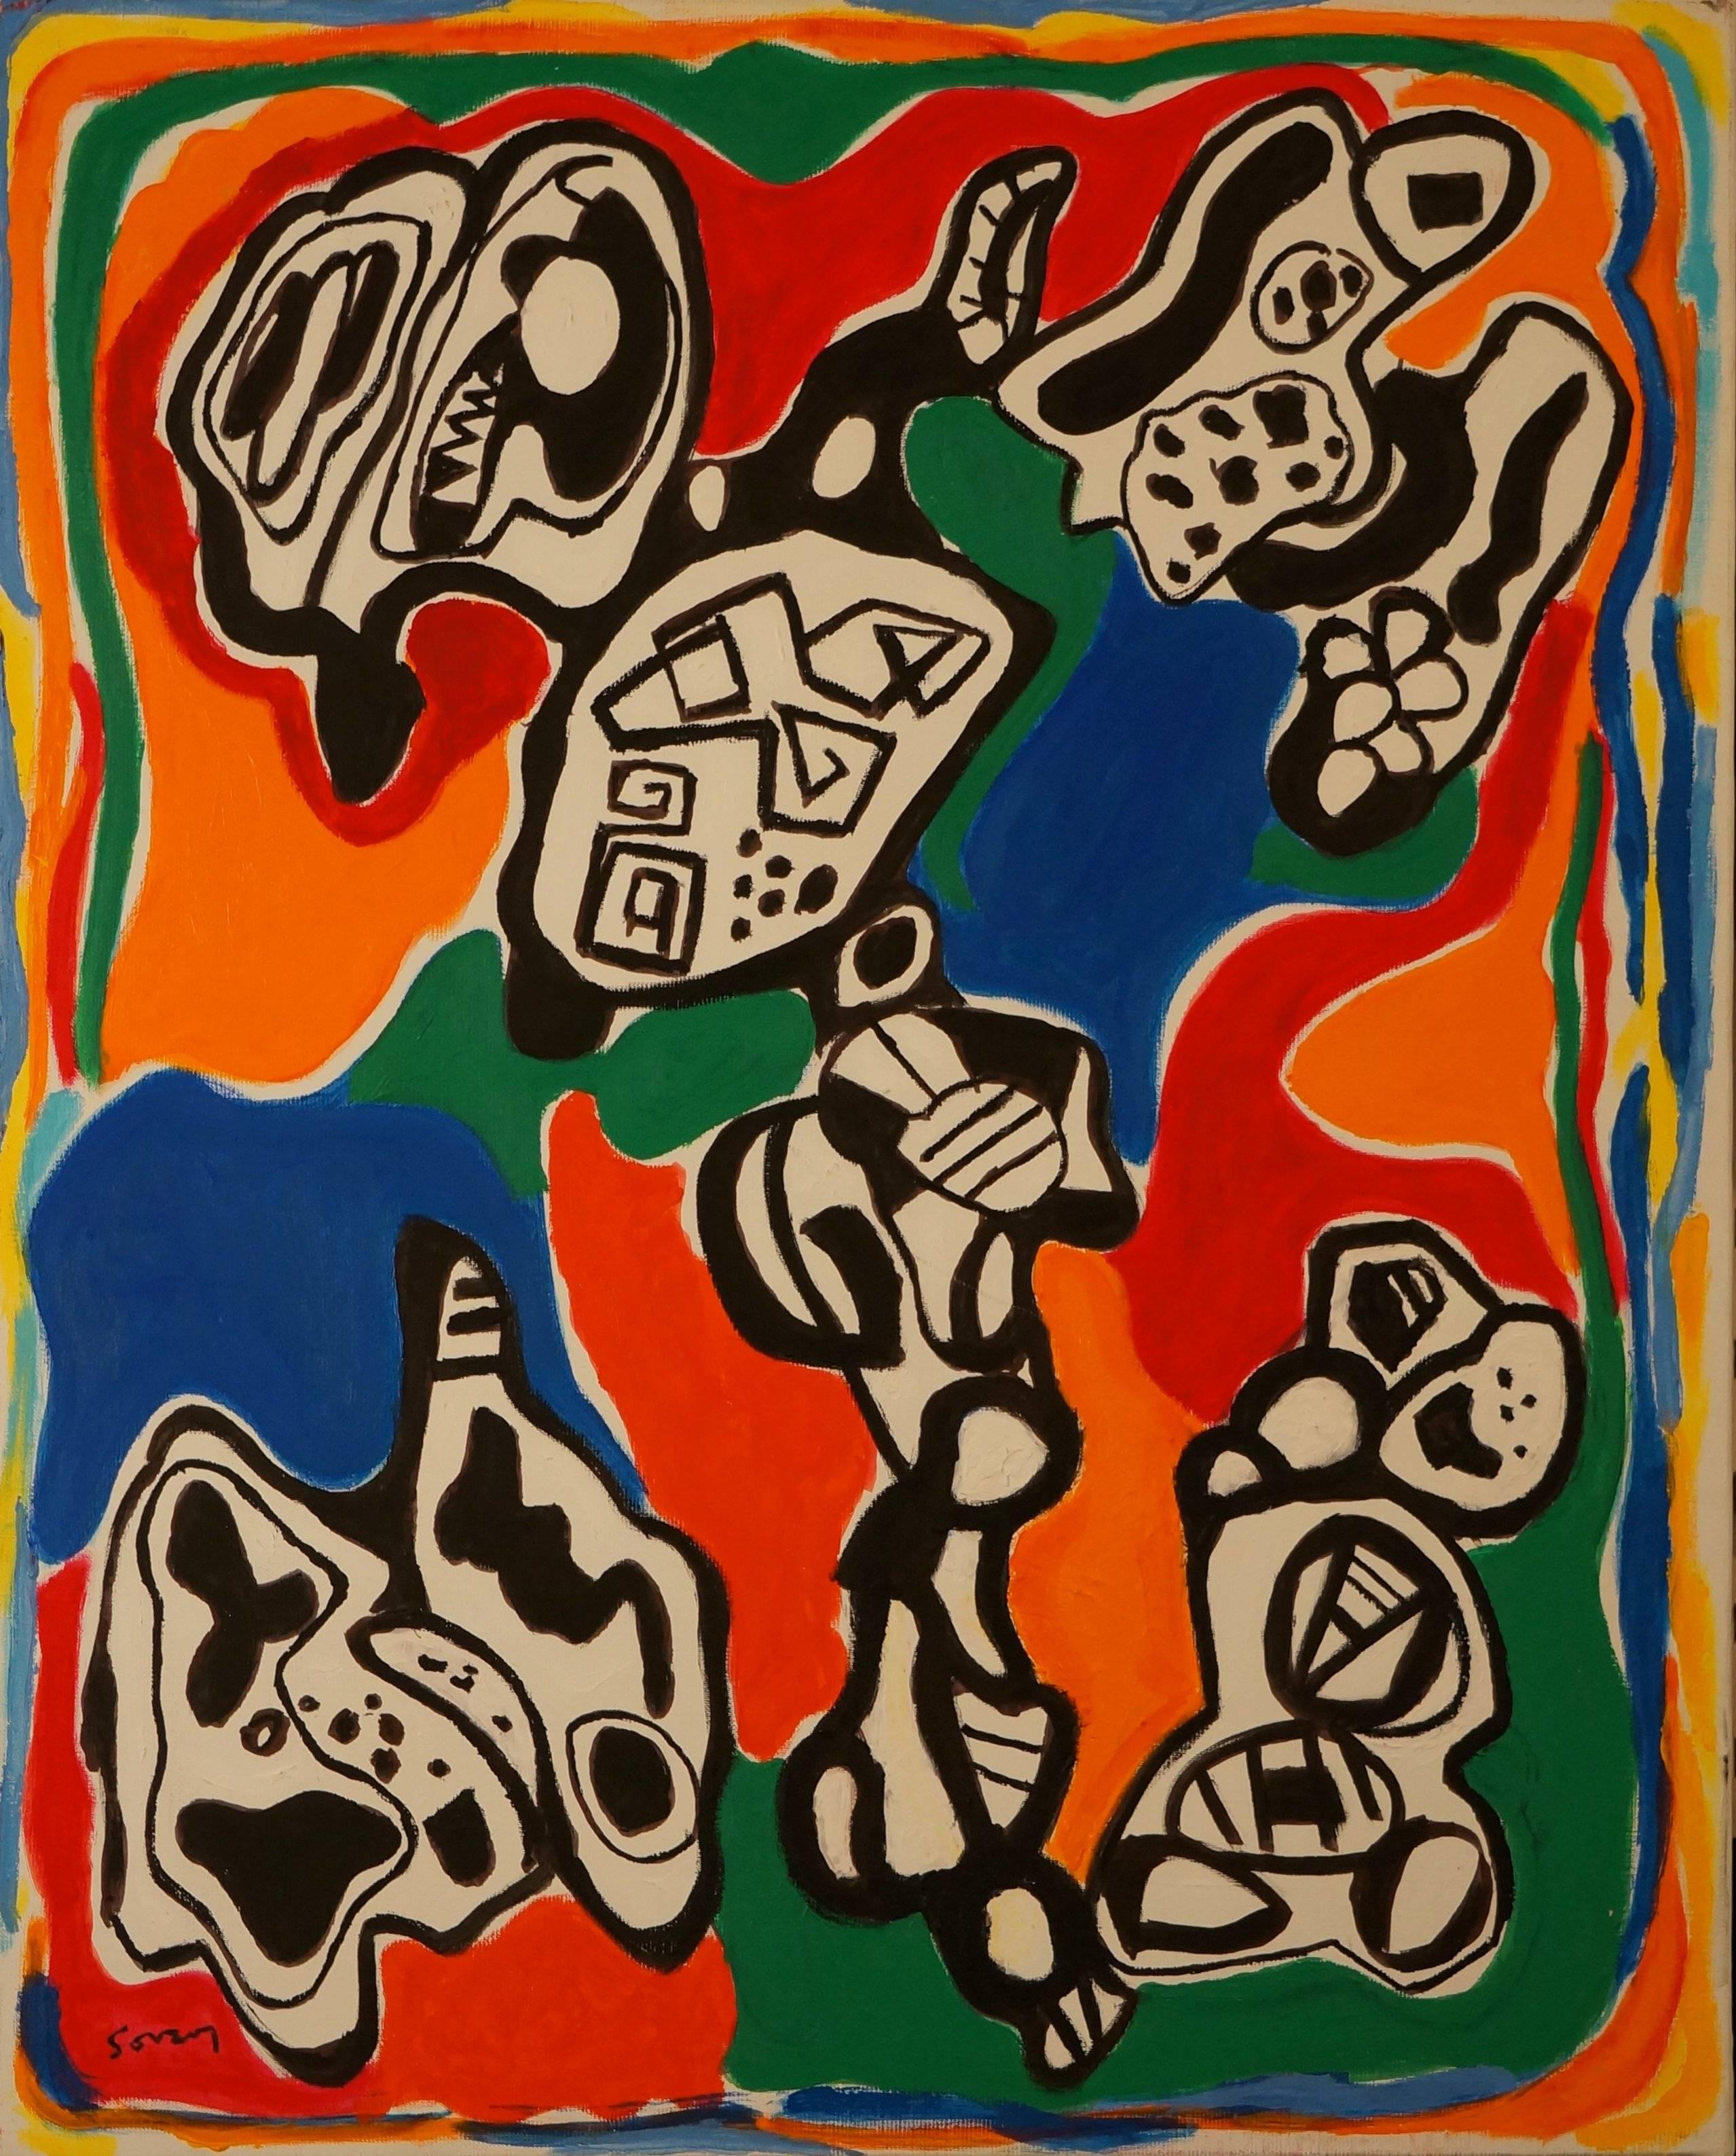 Abstract Painting Gérard Souzay - Composition abstraite S5, 1963, peinture à l'huile, 82x65 cm